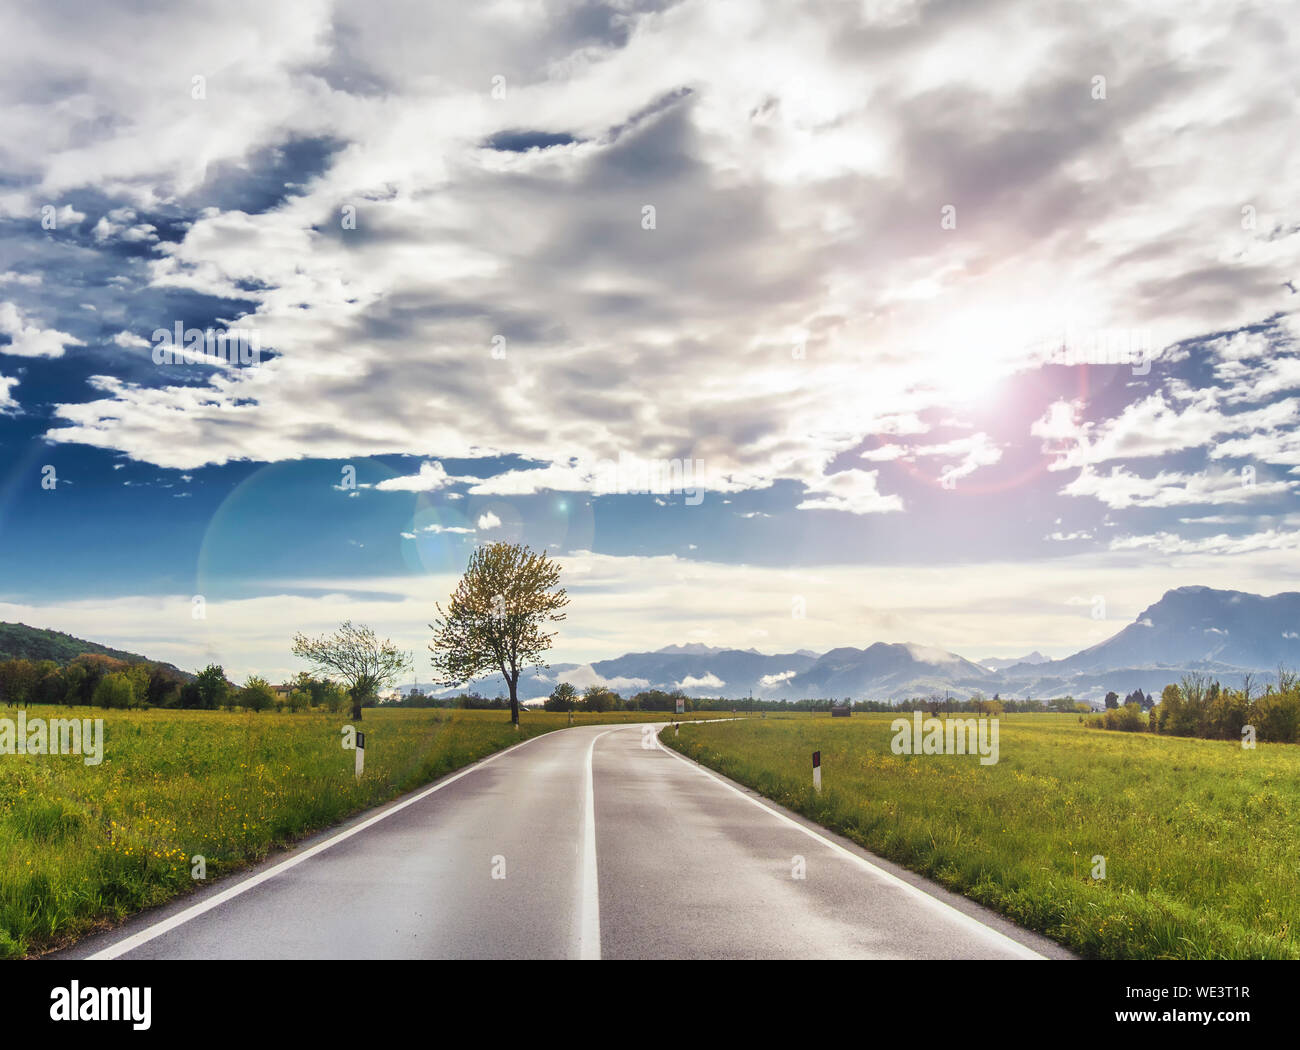 Strada vuota all orizzonte con verdi campi intorno, cielo blu e monti all'orizzonte. Bellissimo paesaggio dopo la pioggia a Pordenone, Italia Foto Stock